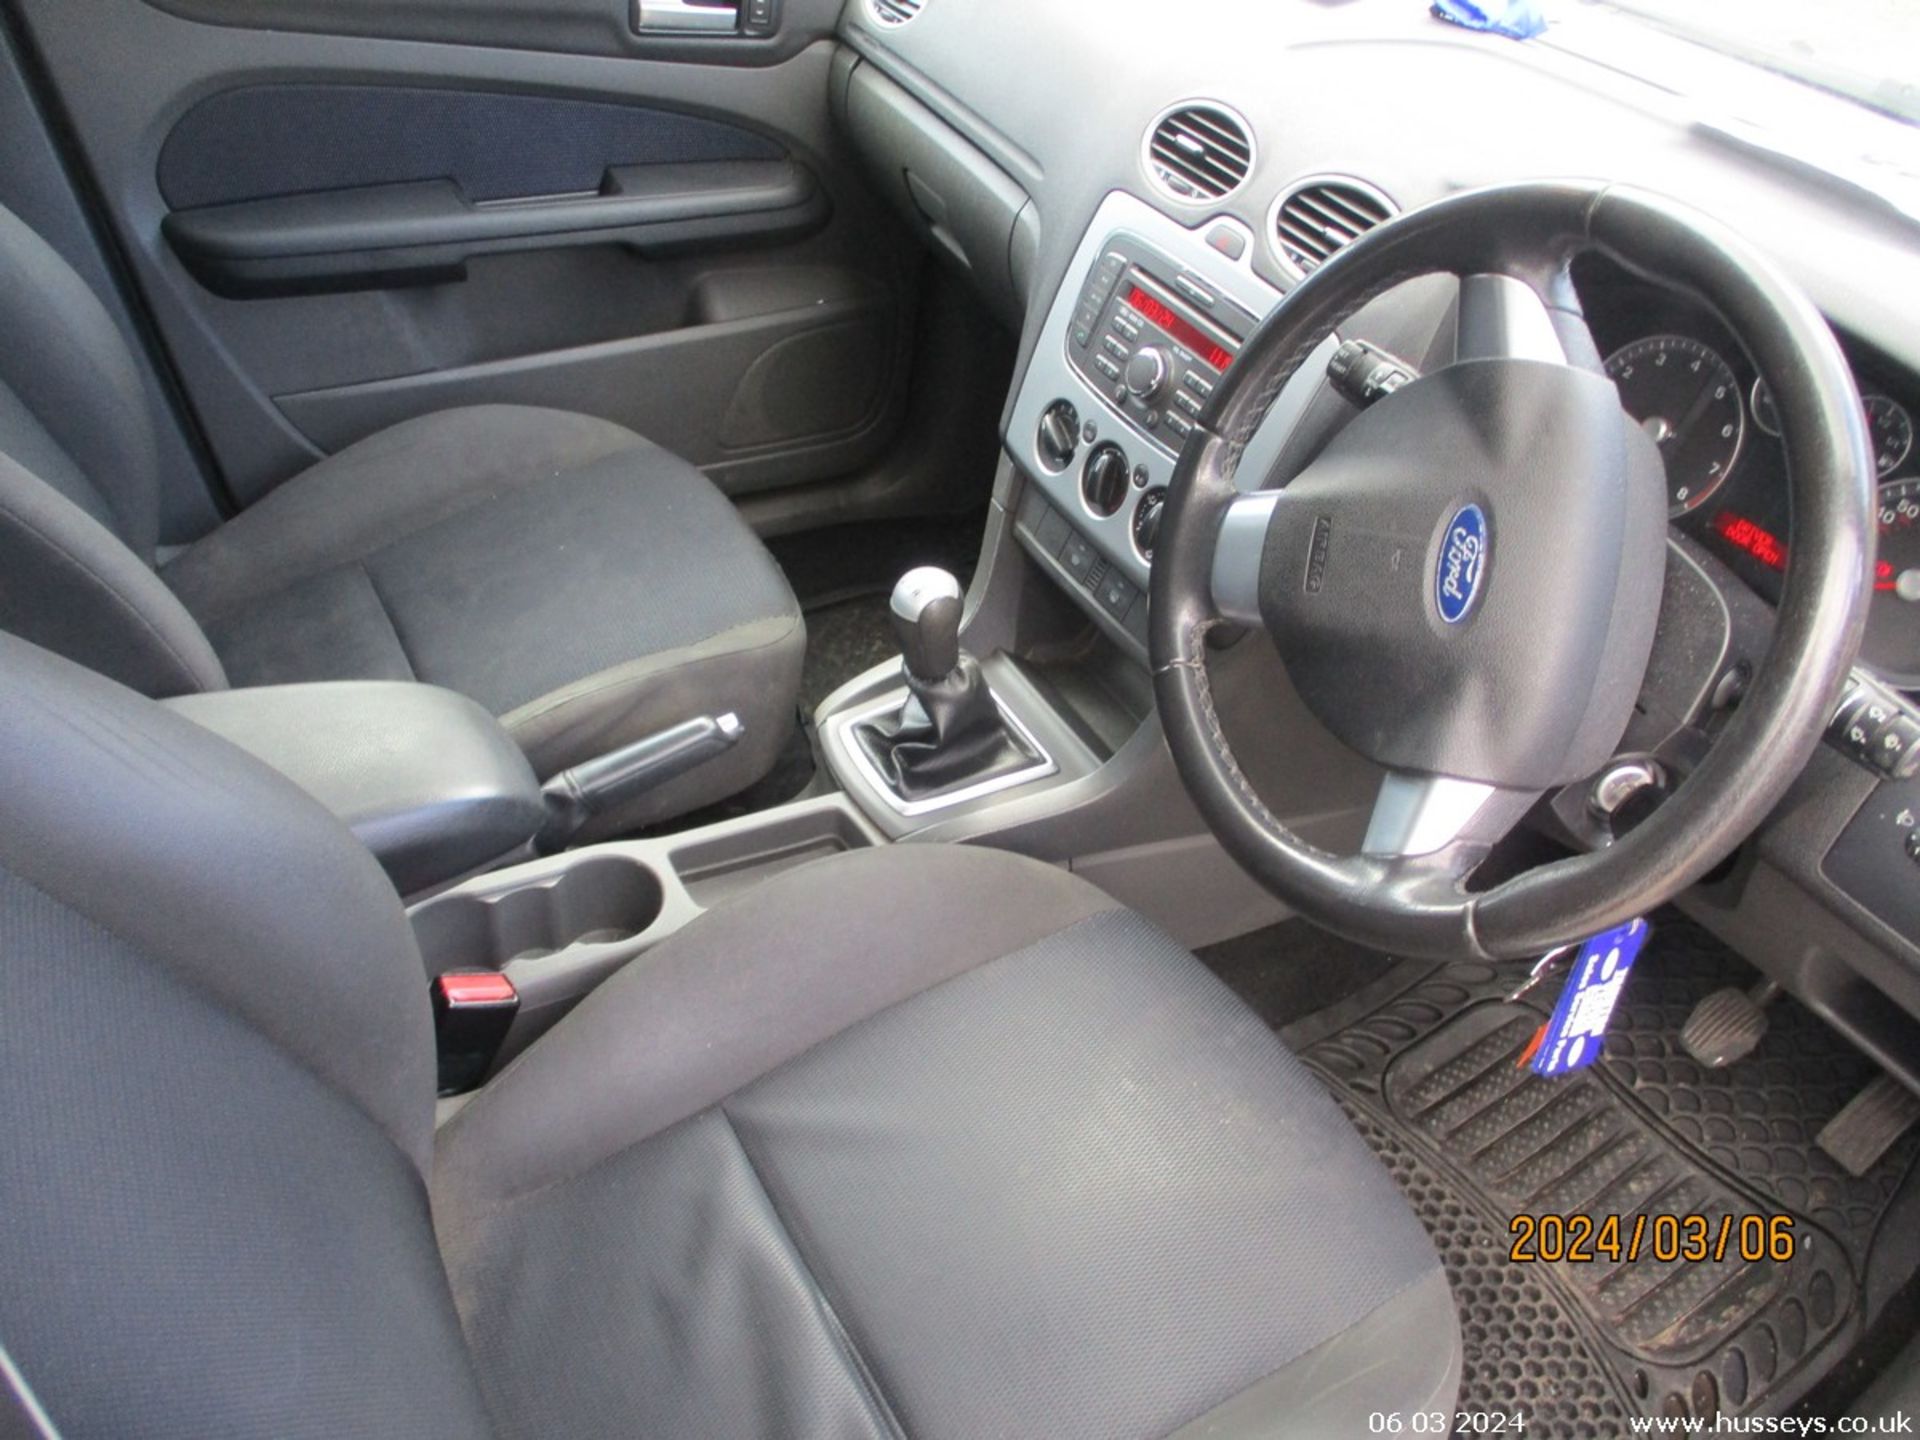 08/07 FORD FOCUS ZETEC CLIMATE - 1596cc 5dr Hatchback (Blue, 153k) - Image 16 of 20